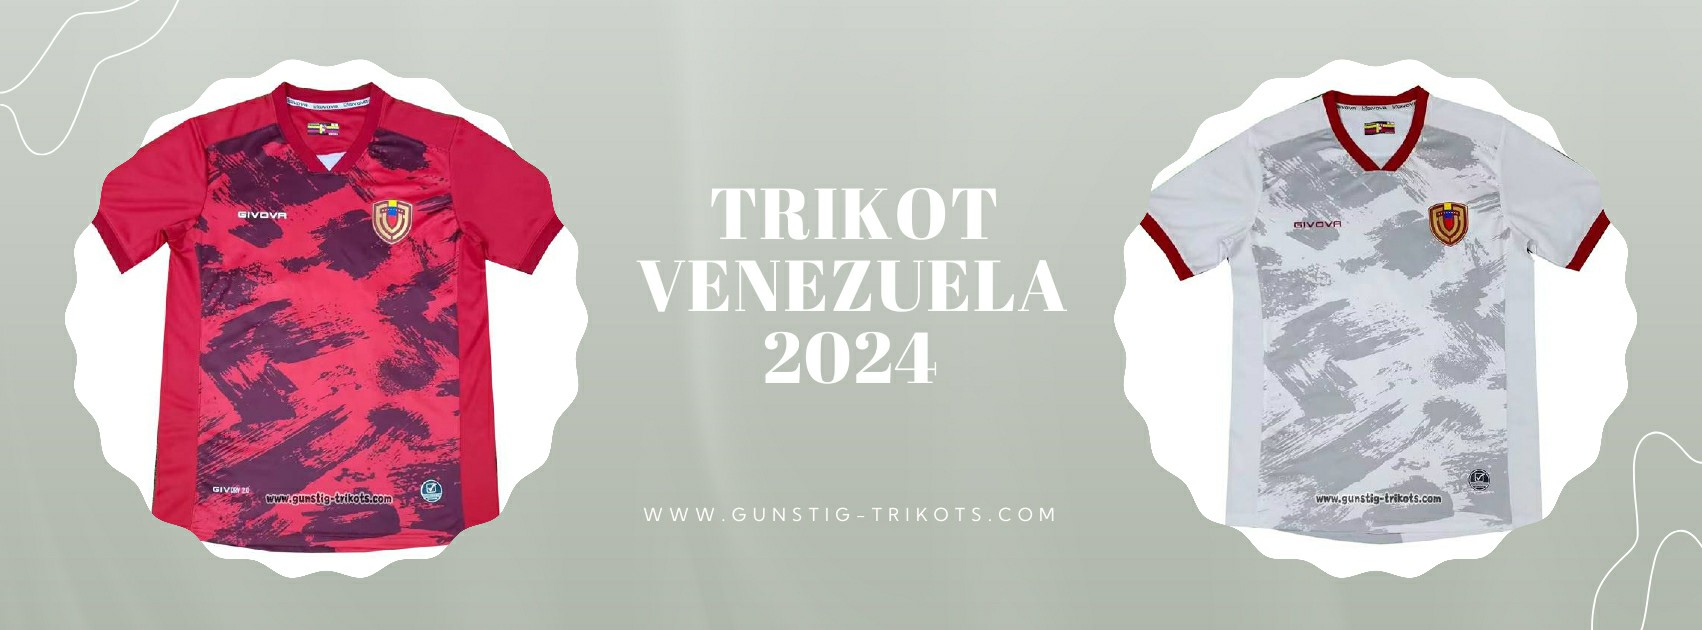 Venezuela Trikot 2024-2025